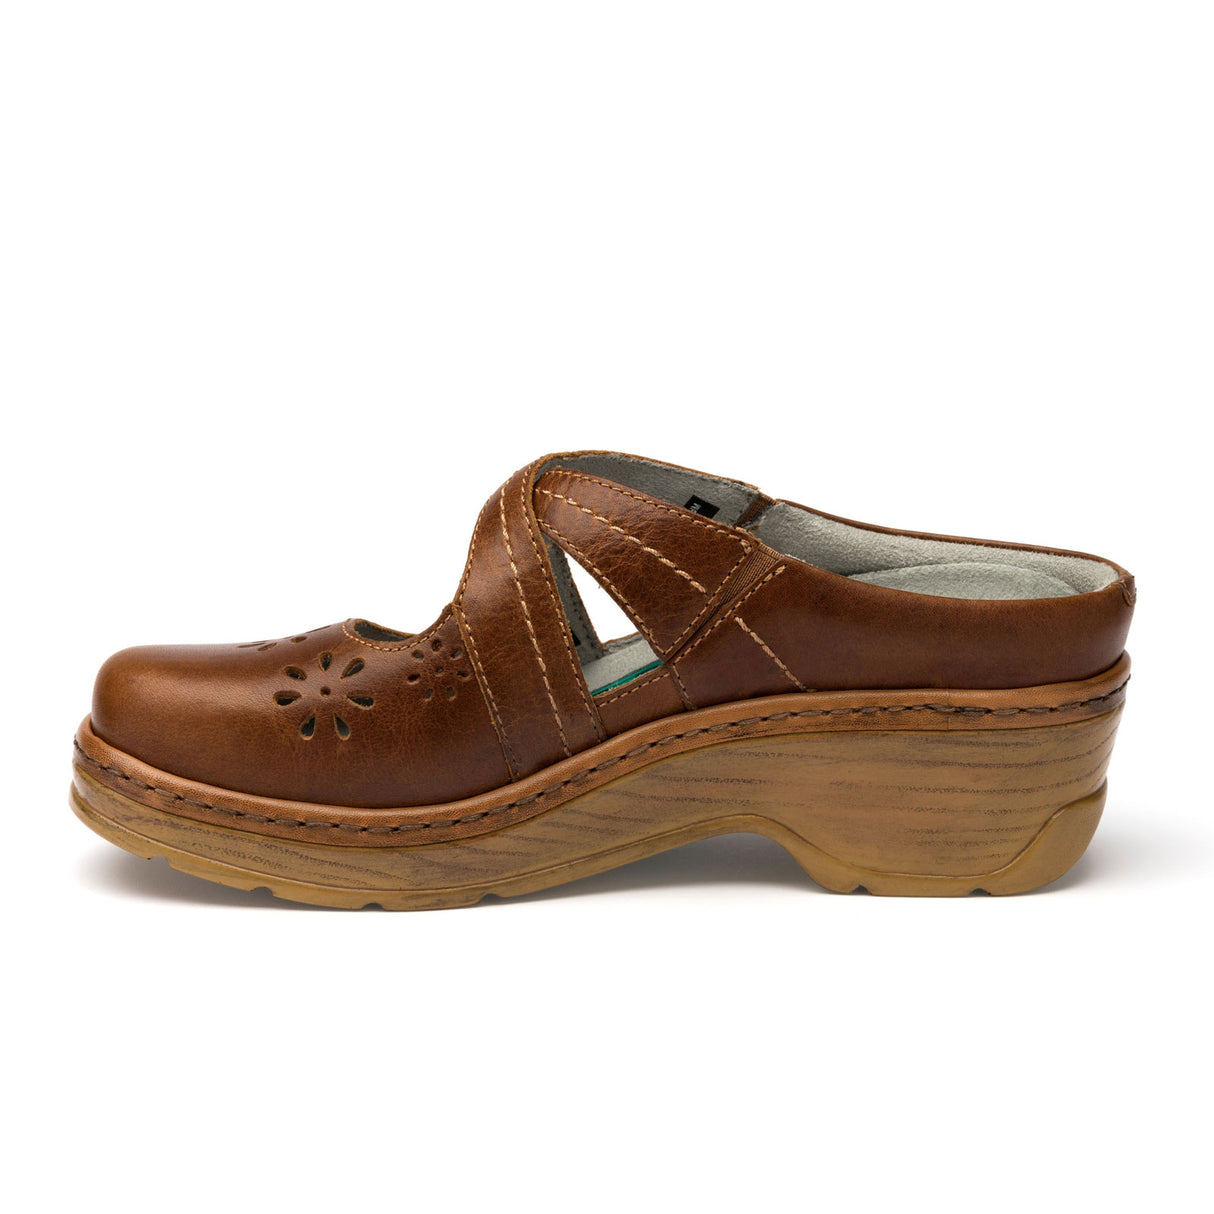 Klogs Carolina (Women) - Cashew Dress-Casual - Clogs & Mules - The Heel Shoe Fitters